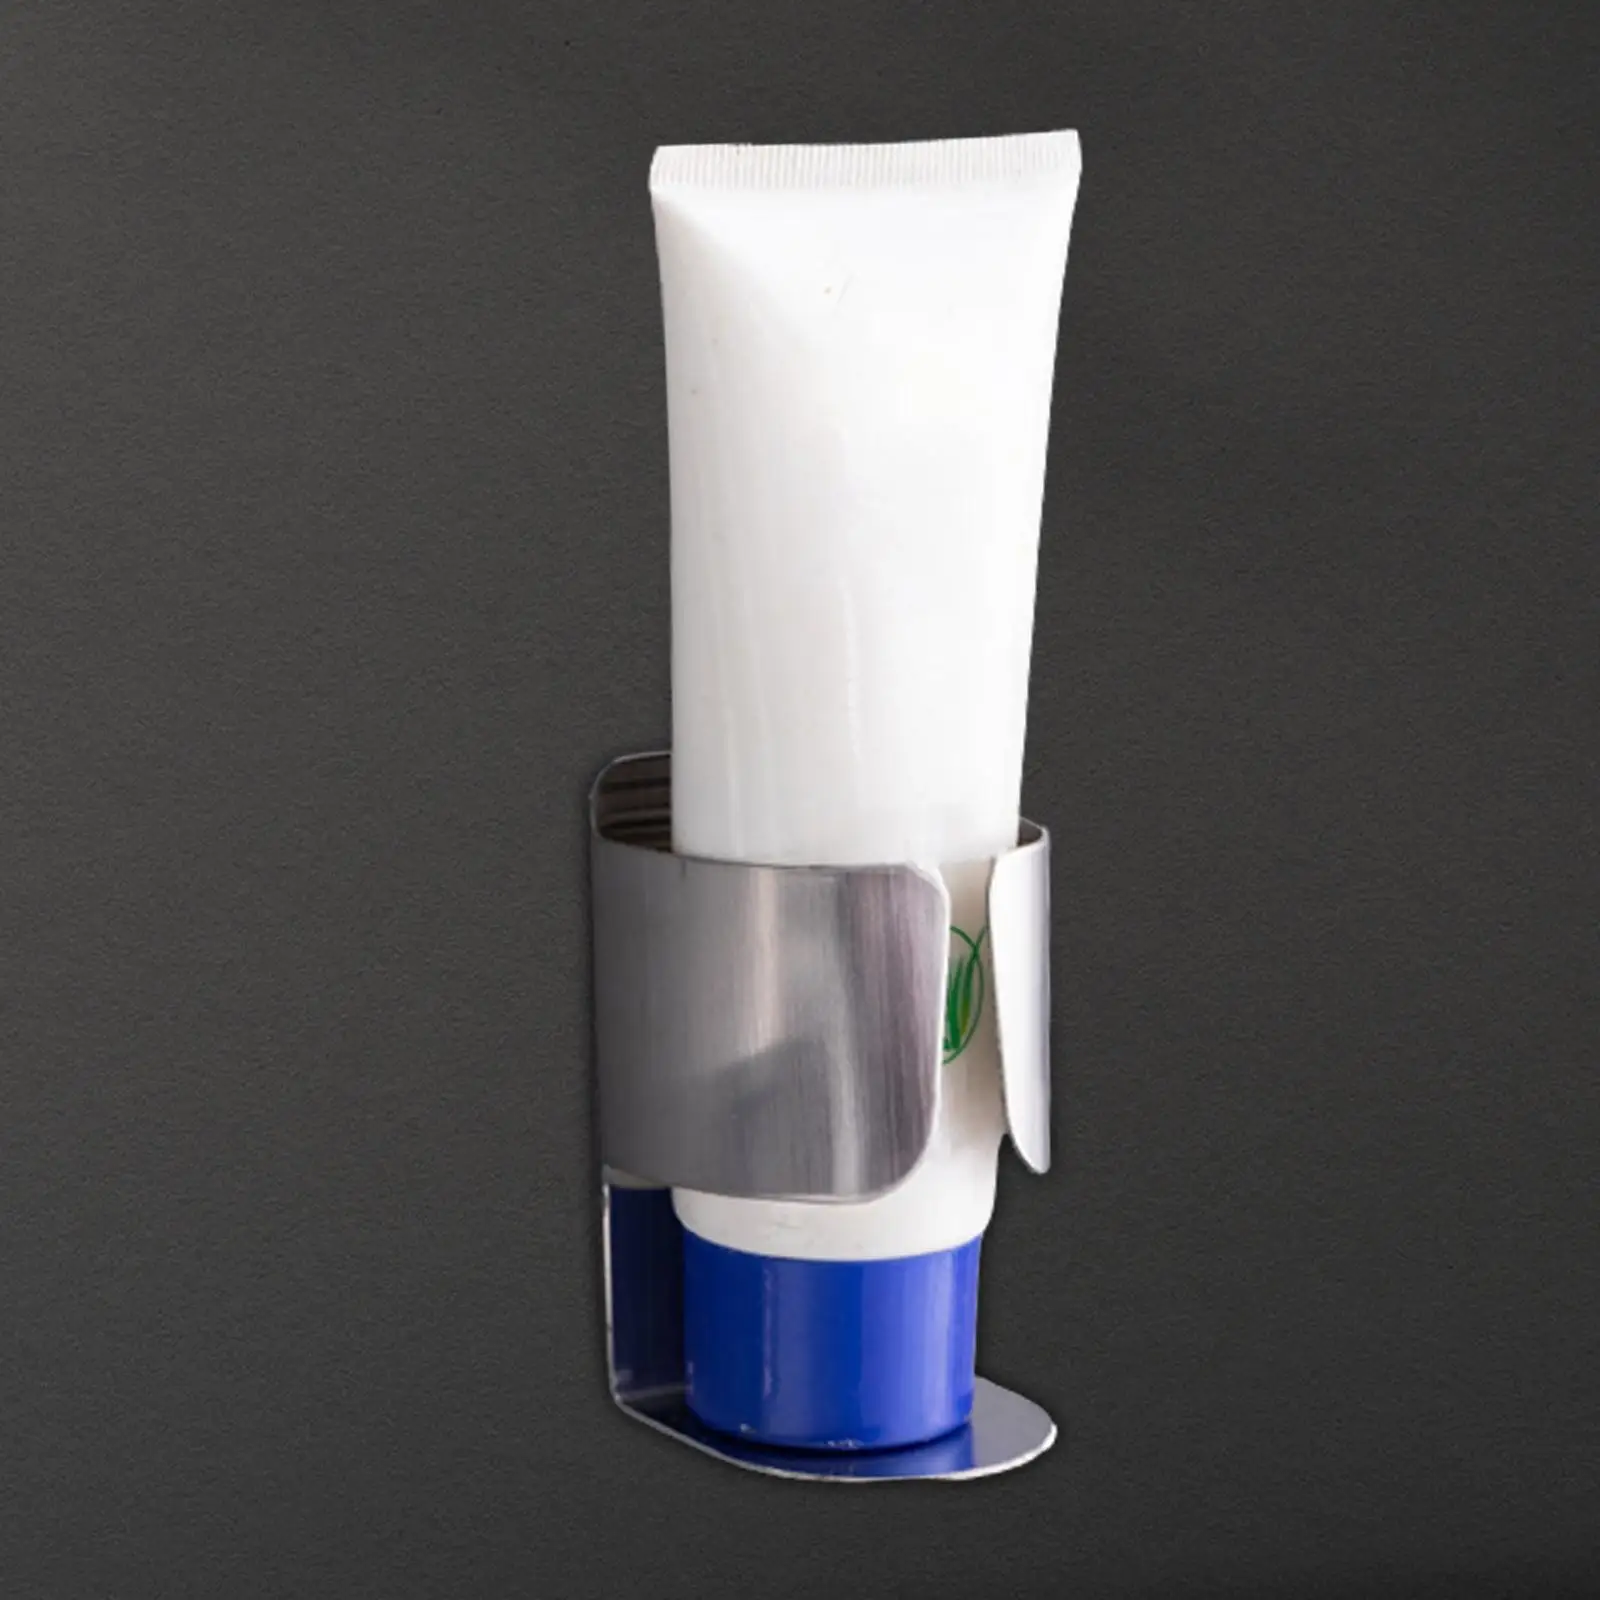 Stainless Steel Toothbrush Holder Multifunctional Rustproof Waterproof Space Saving Bathroom Storage Stand for Facial cleaner